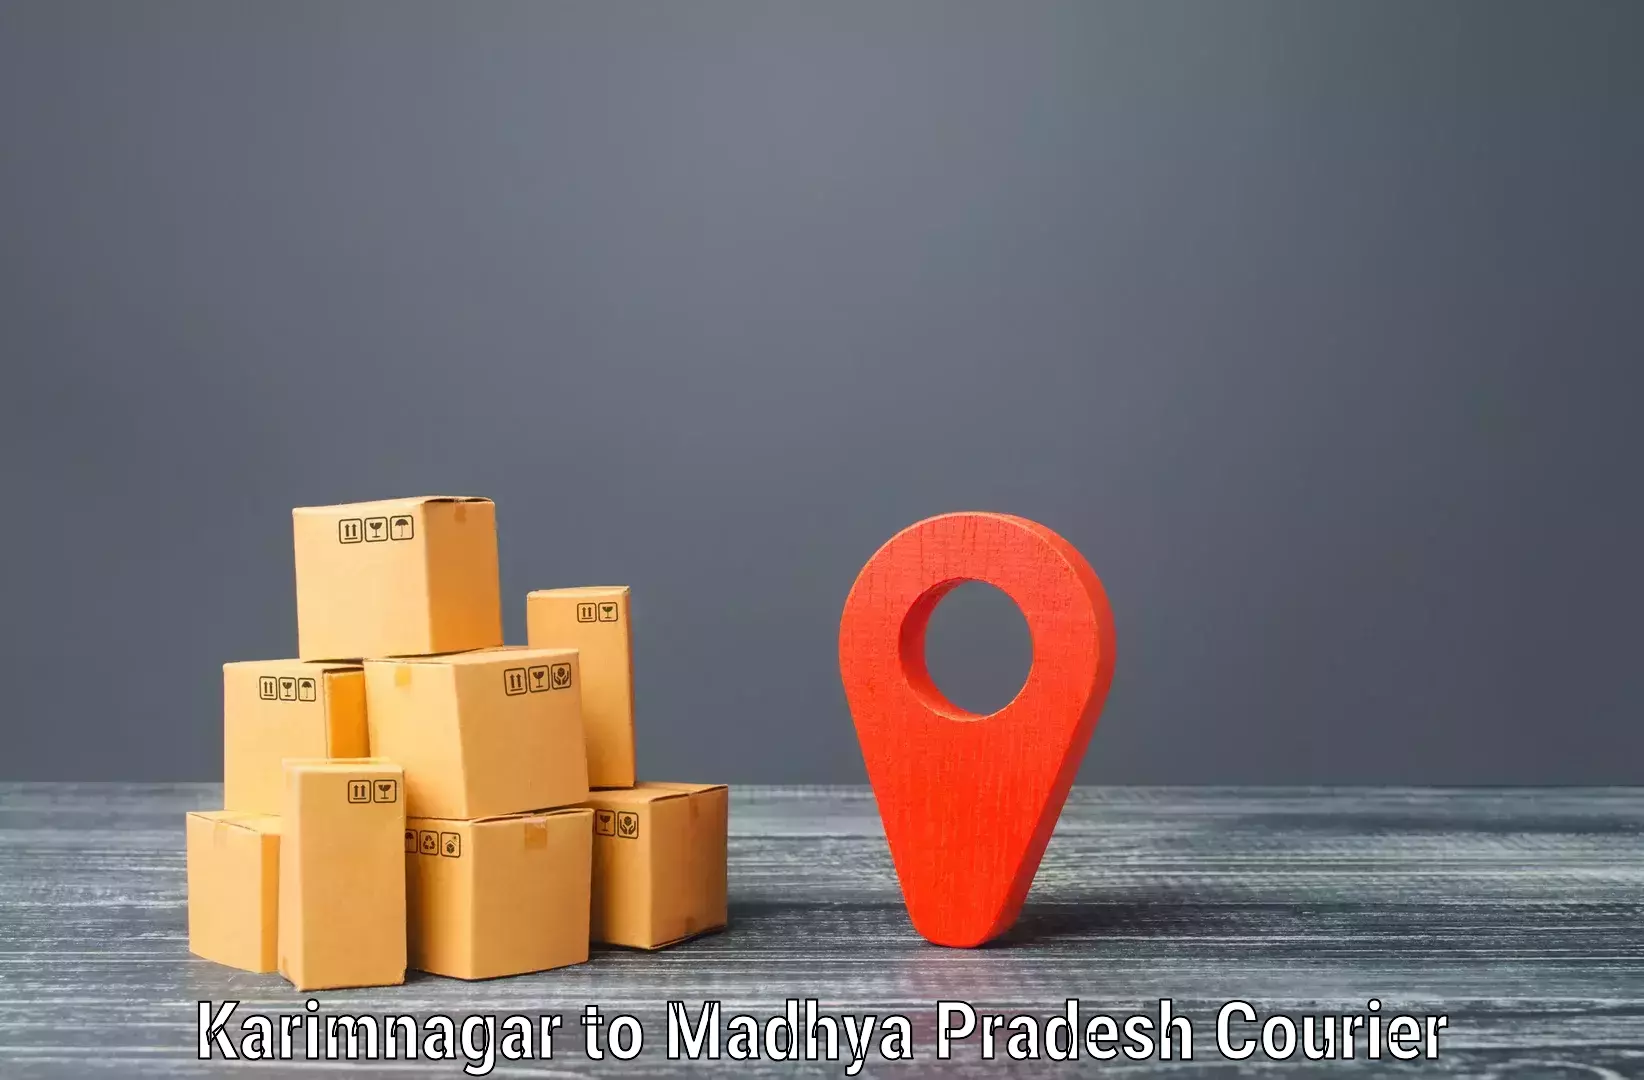 International courier networks Karimnagar to Ambah